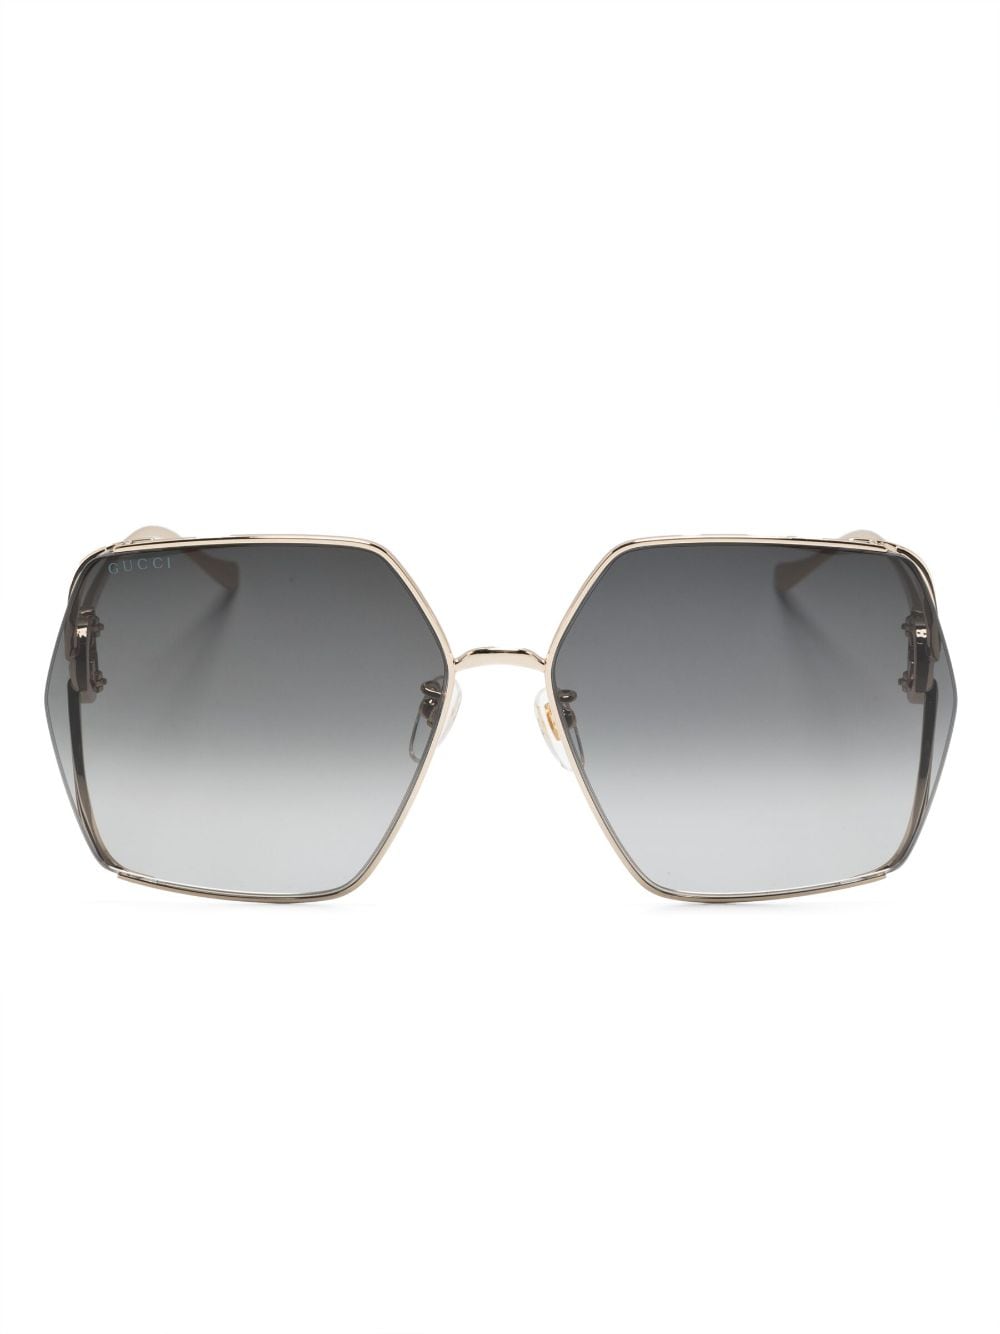 Gucci Interlocking-g Square-frame Sunglasses In Gold